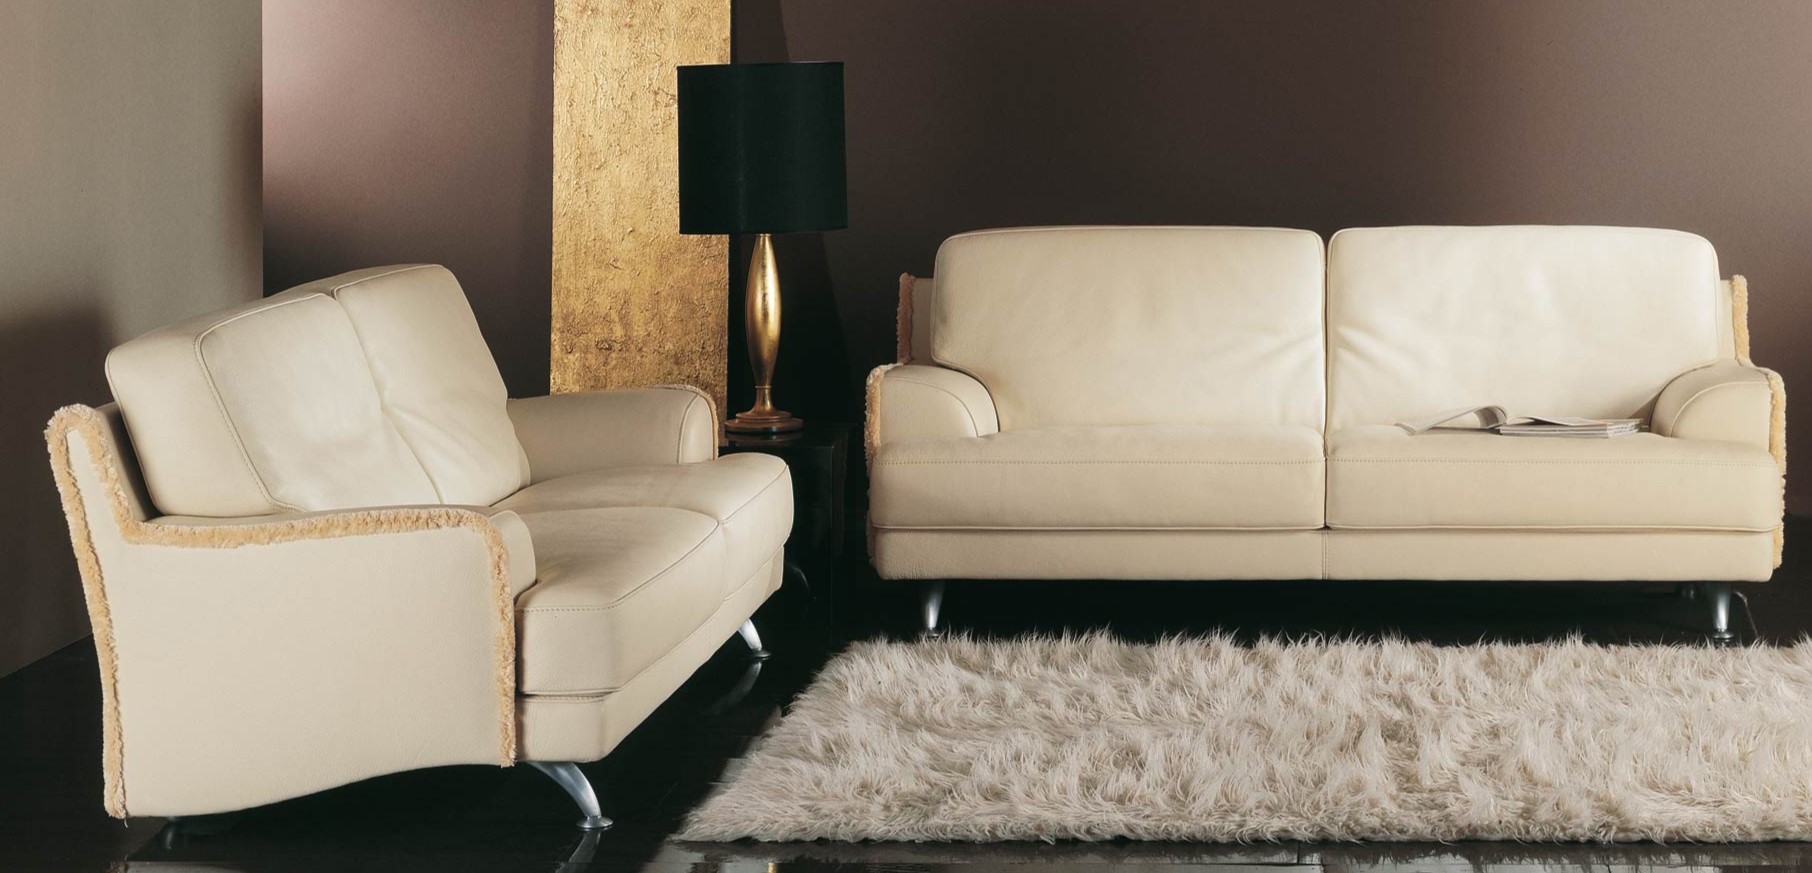 Мебель из искусственной кожи пользуется популярностью и используется в современных интерьерах